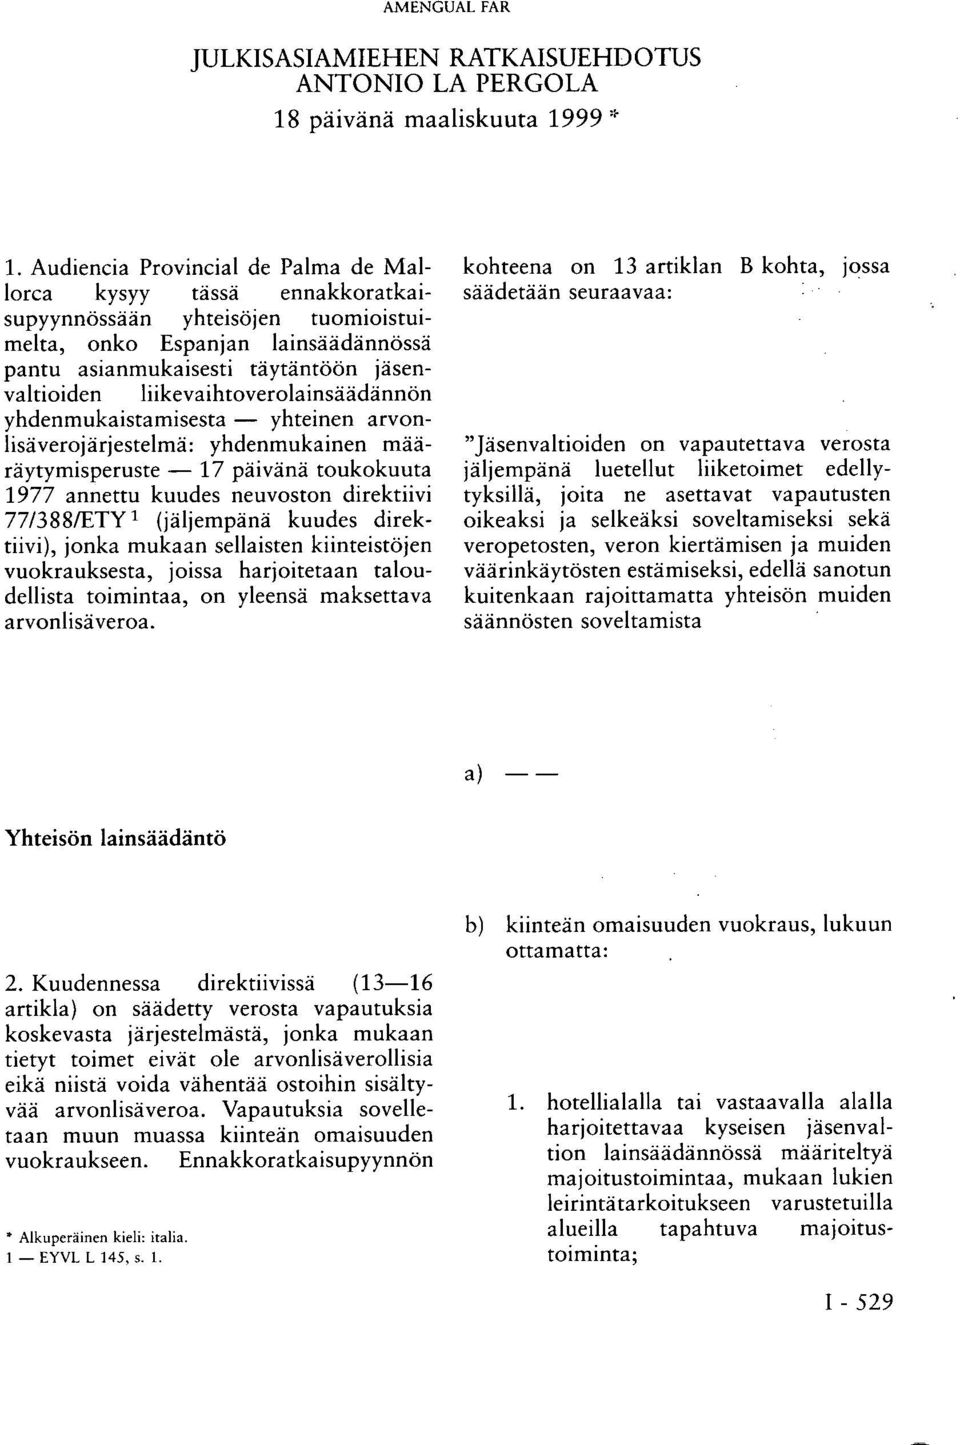 liikevaihtoverolainsäädännön yhdenmukaistamisesta yhteinen arvonlisäverojärjestelmä: yhdenmukainen määräytymisperuste 17 päivänä toukokuuta 1977 annettu kuudes neuvoston direktiivi 77/388/ETY 1